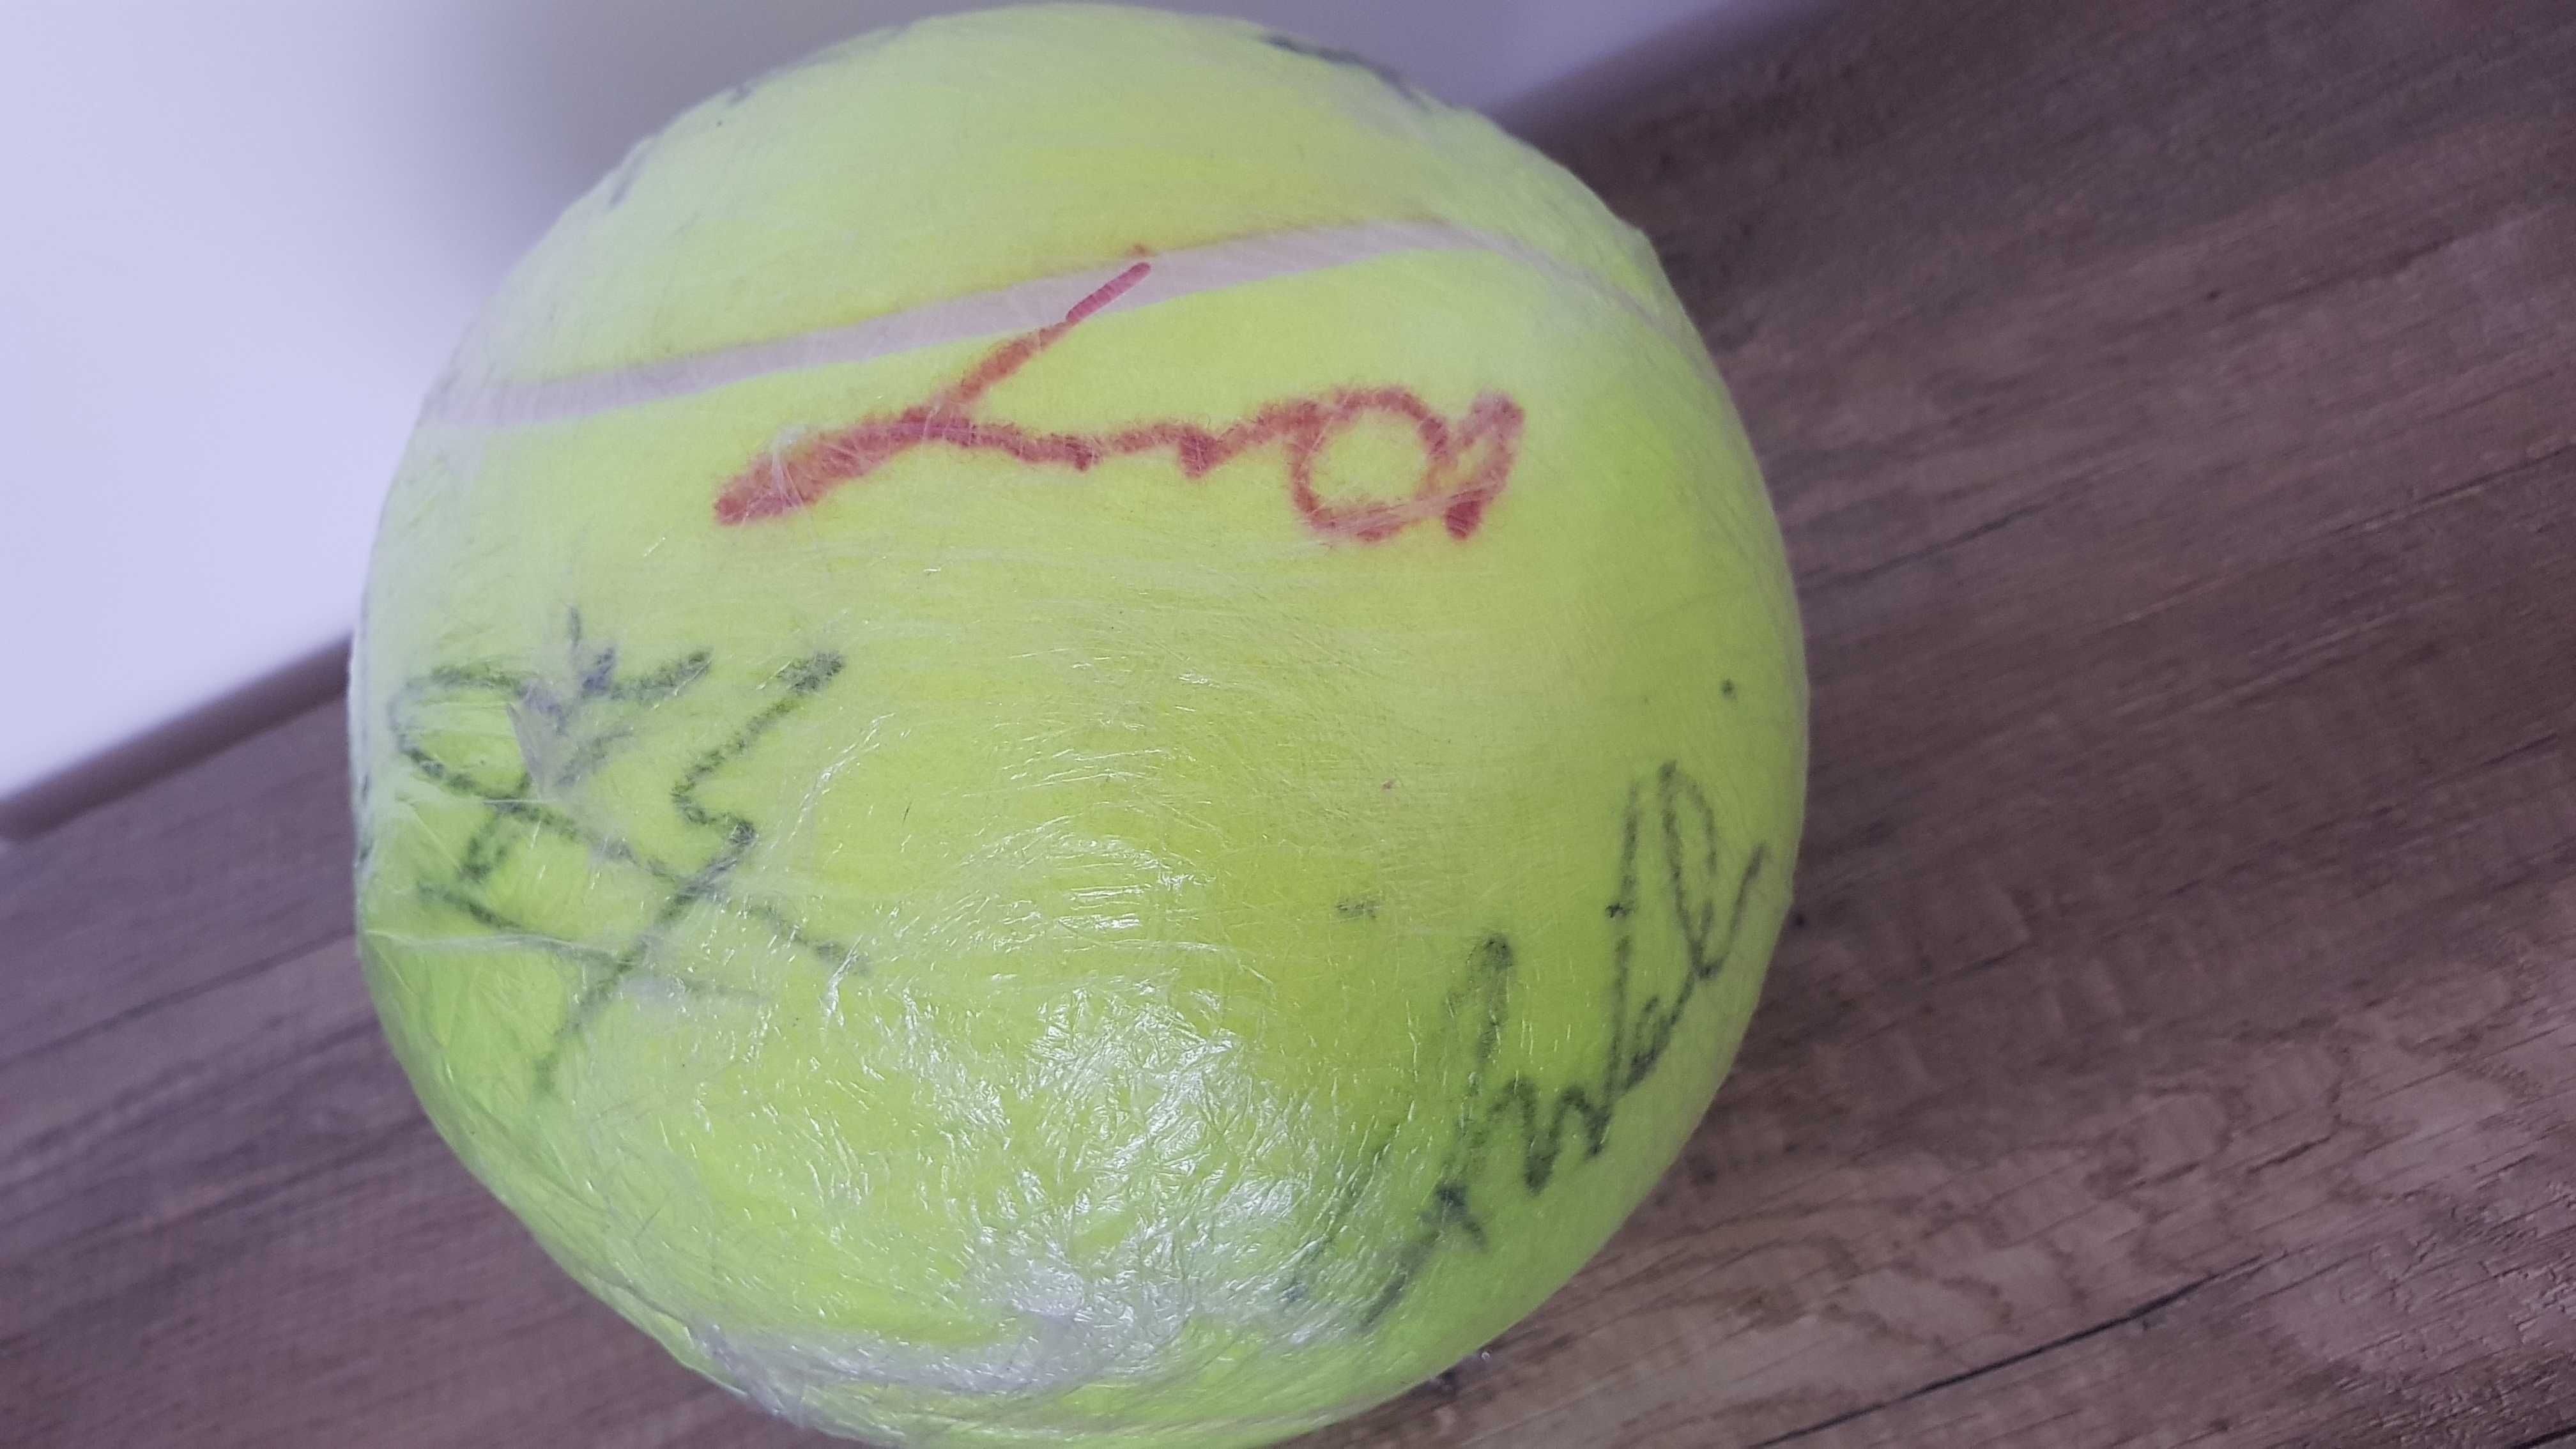 Minge tenis mare cu autografe